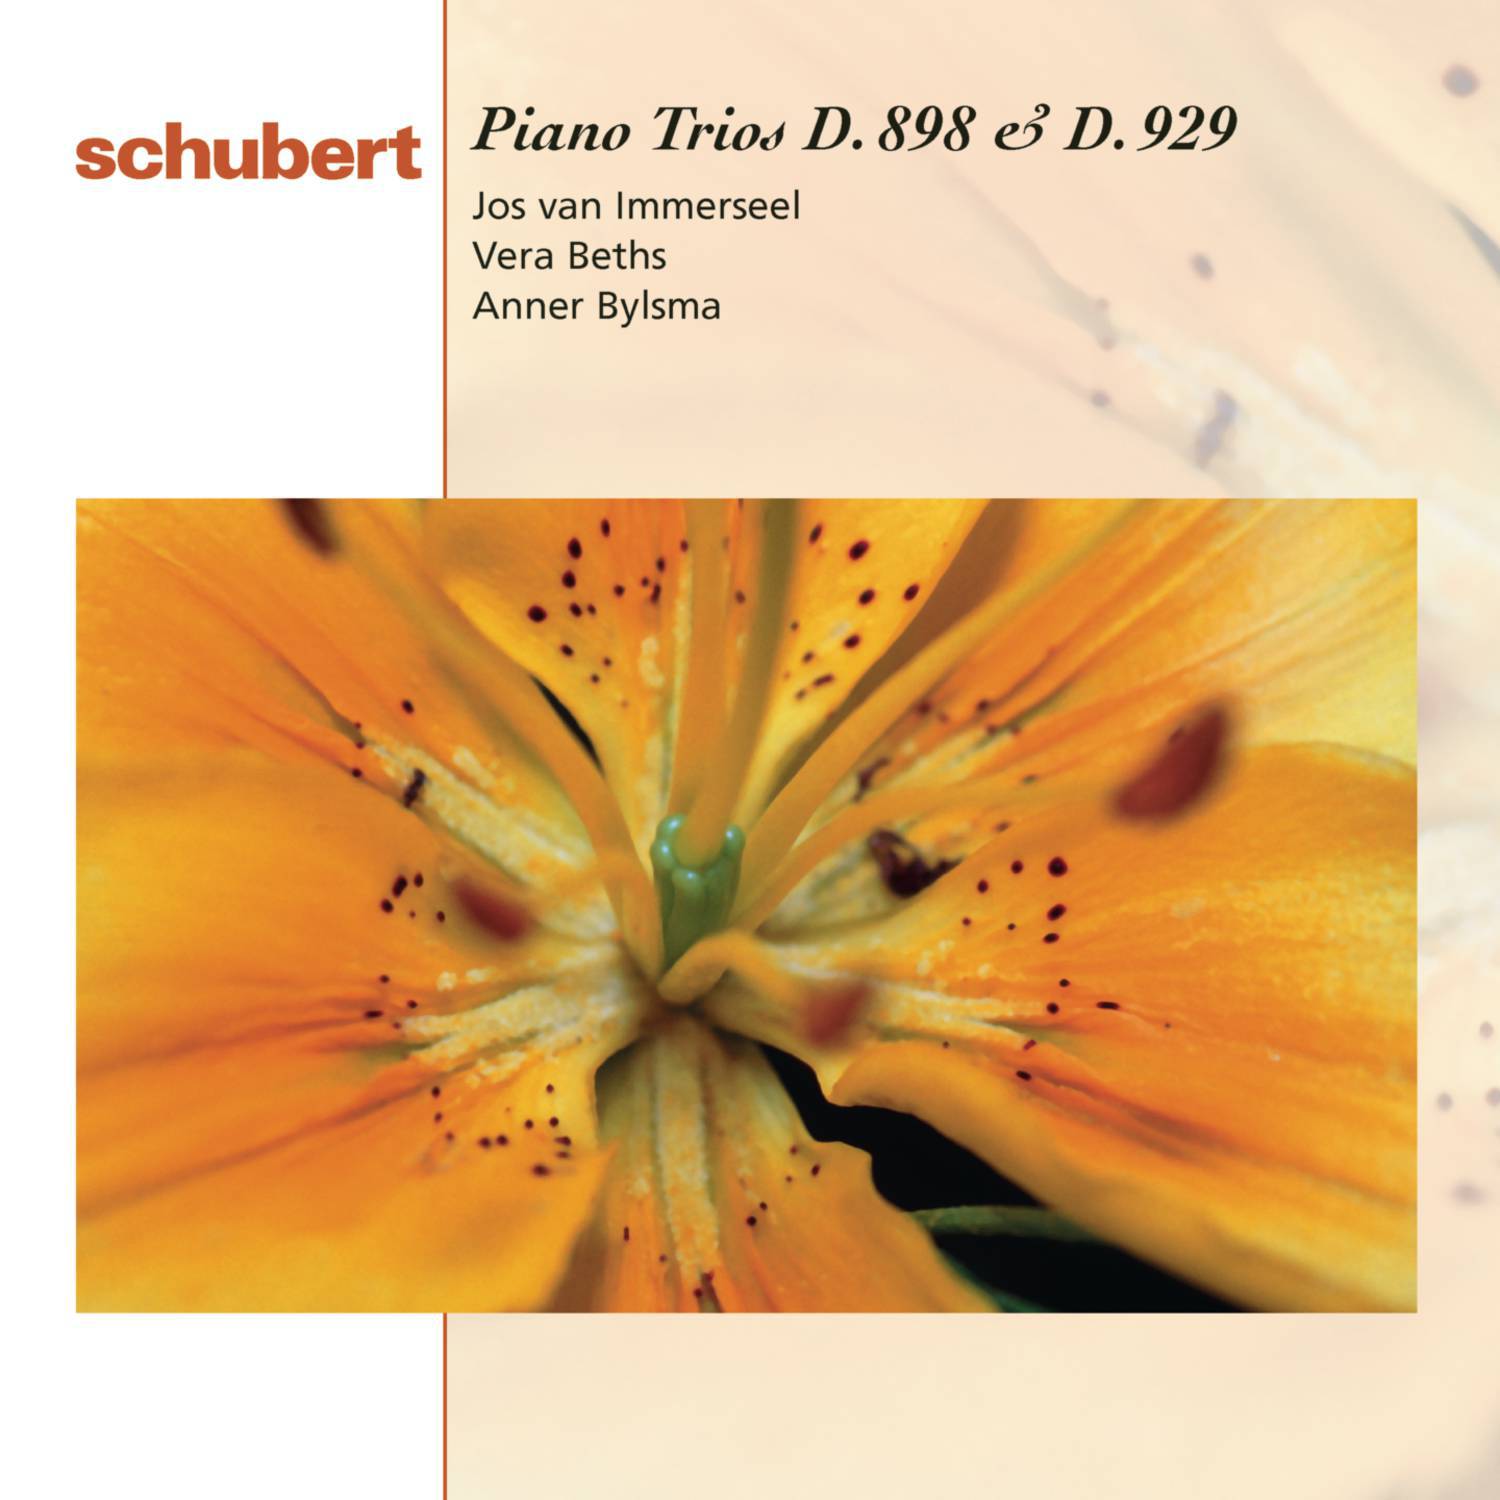 Piano Trio No. 1 in B-Flat Major, D. 898, Op. 99: I. Allegro moderato